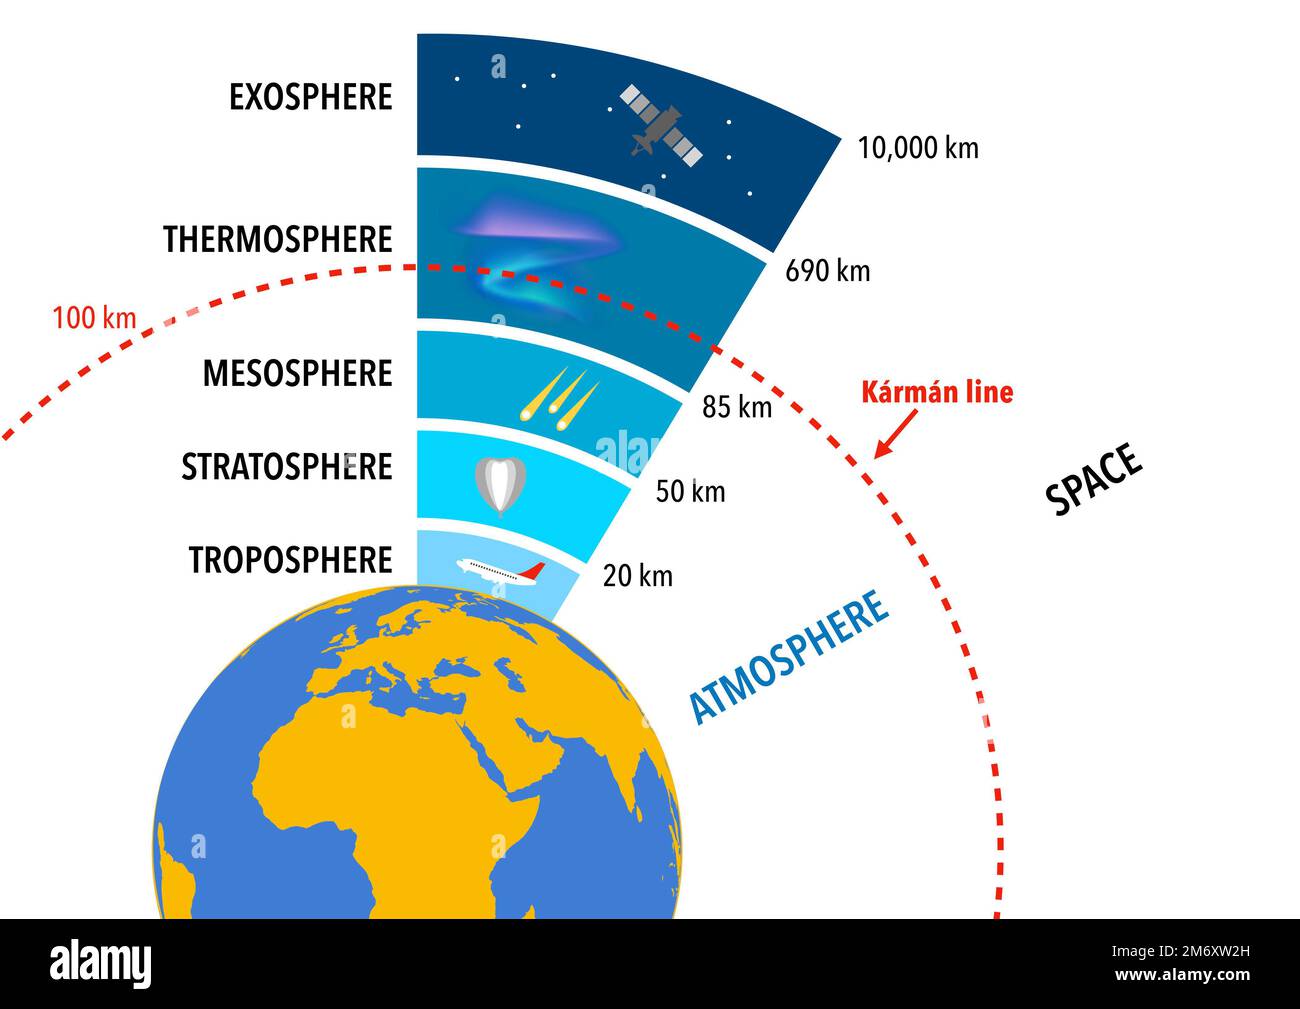 Les couches de l'atmosphère terrestre et la ligne Karman qui sépare l' atmosphère de l'espace Photo Stock - Alamy